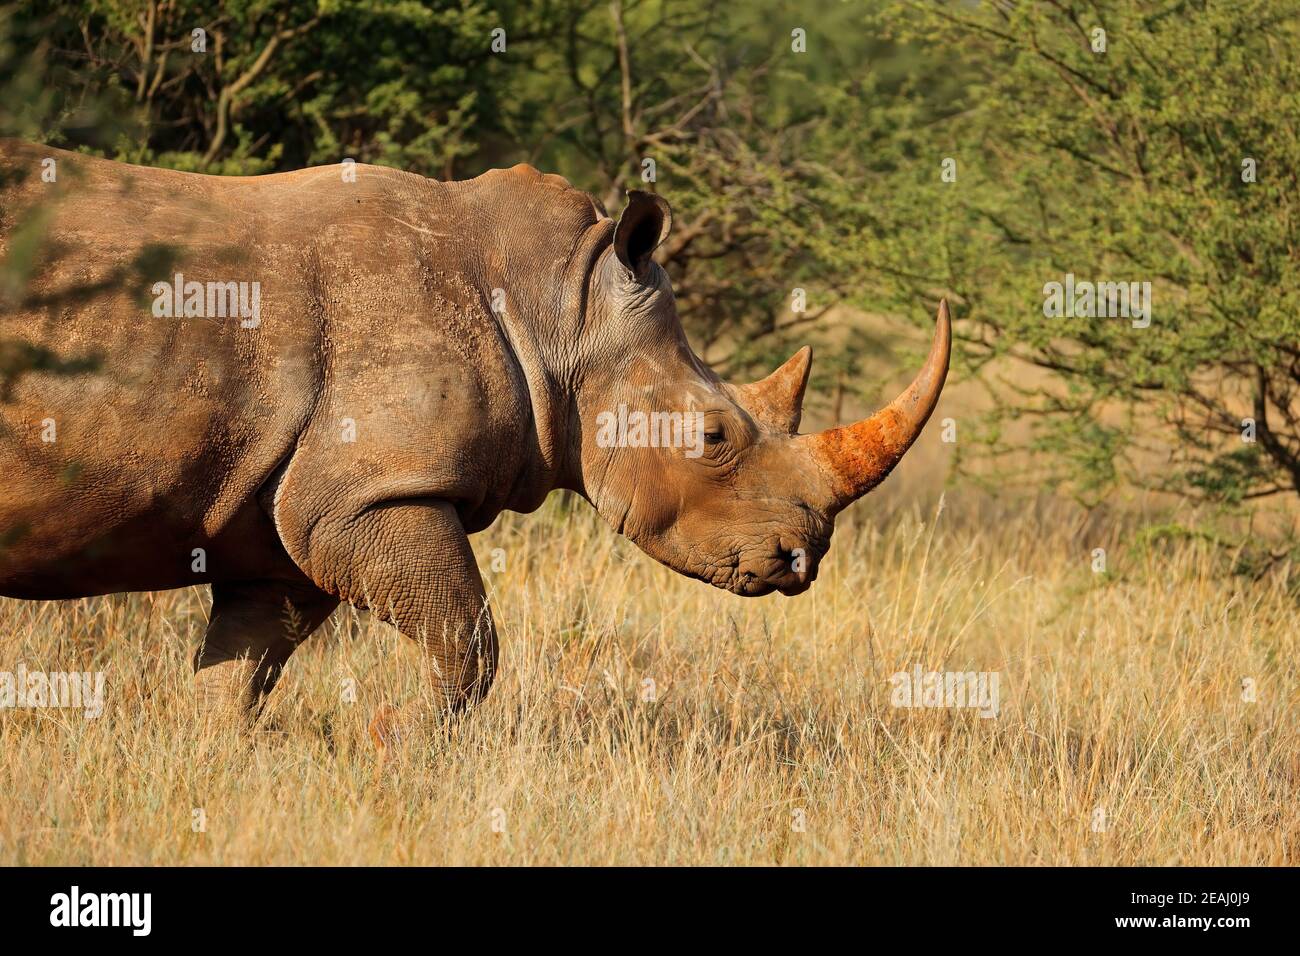 White rhinoceros in natural habitat Stock Photo